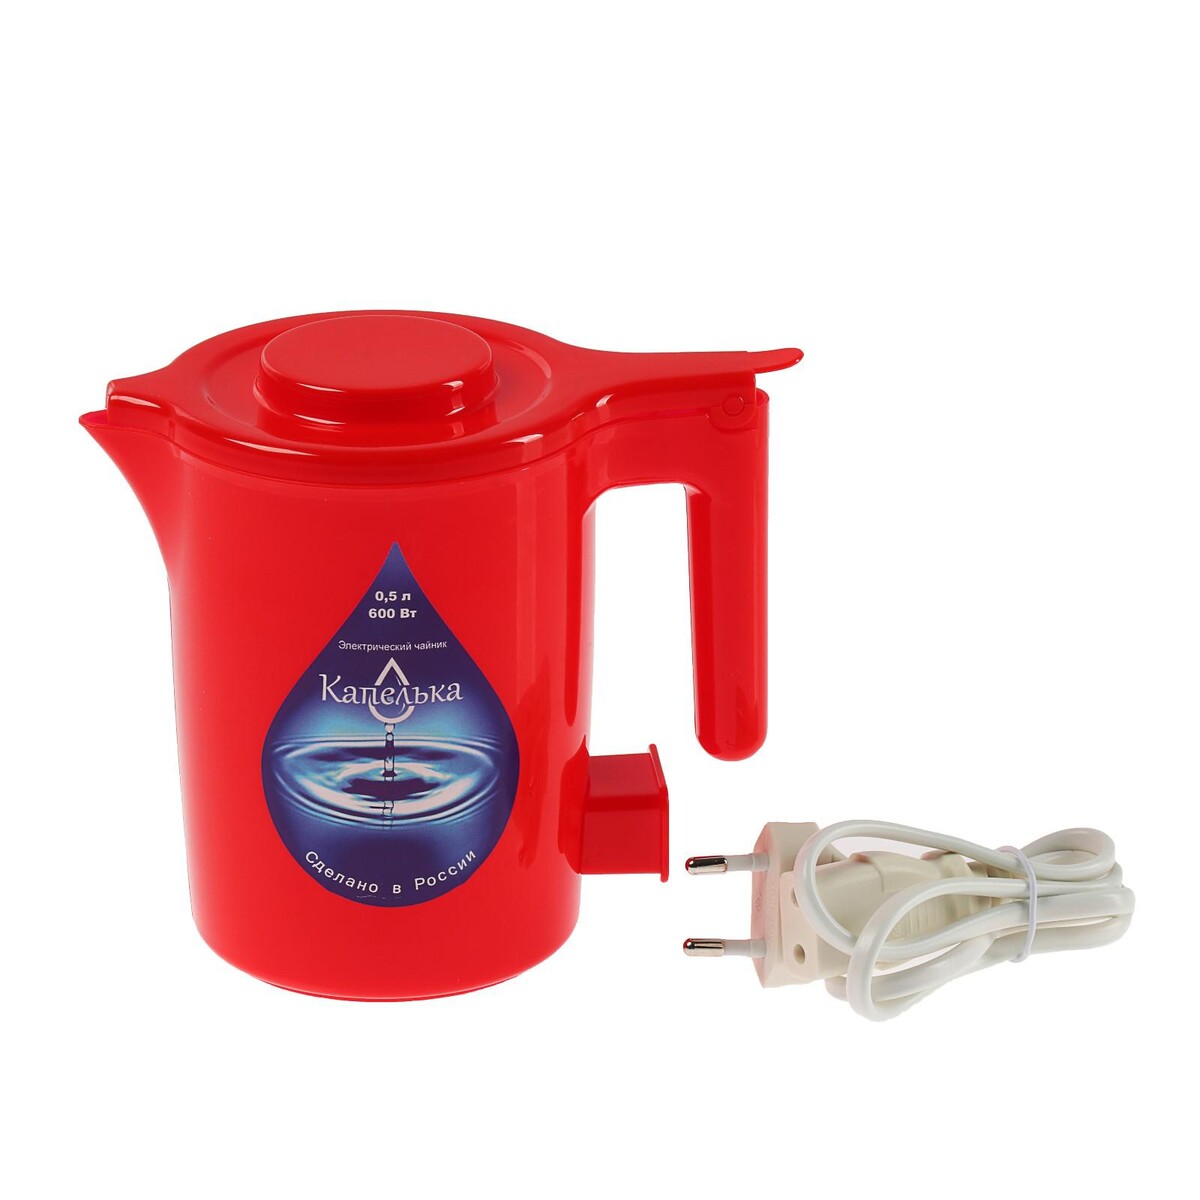 Чайник электрический чайник электрический яромир красный 1 8 л 1500 вт скрытый нагревательный элемент пластик